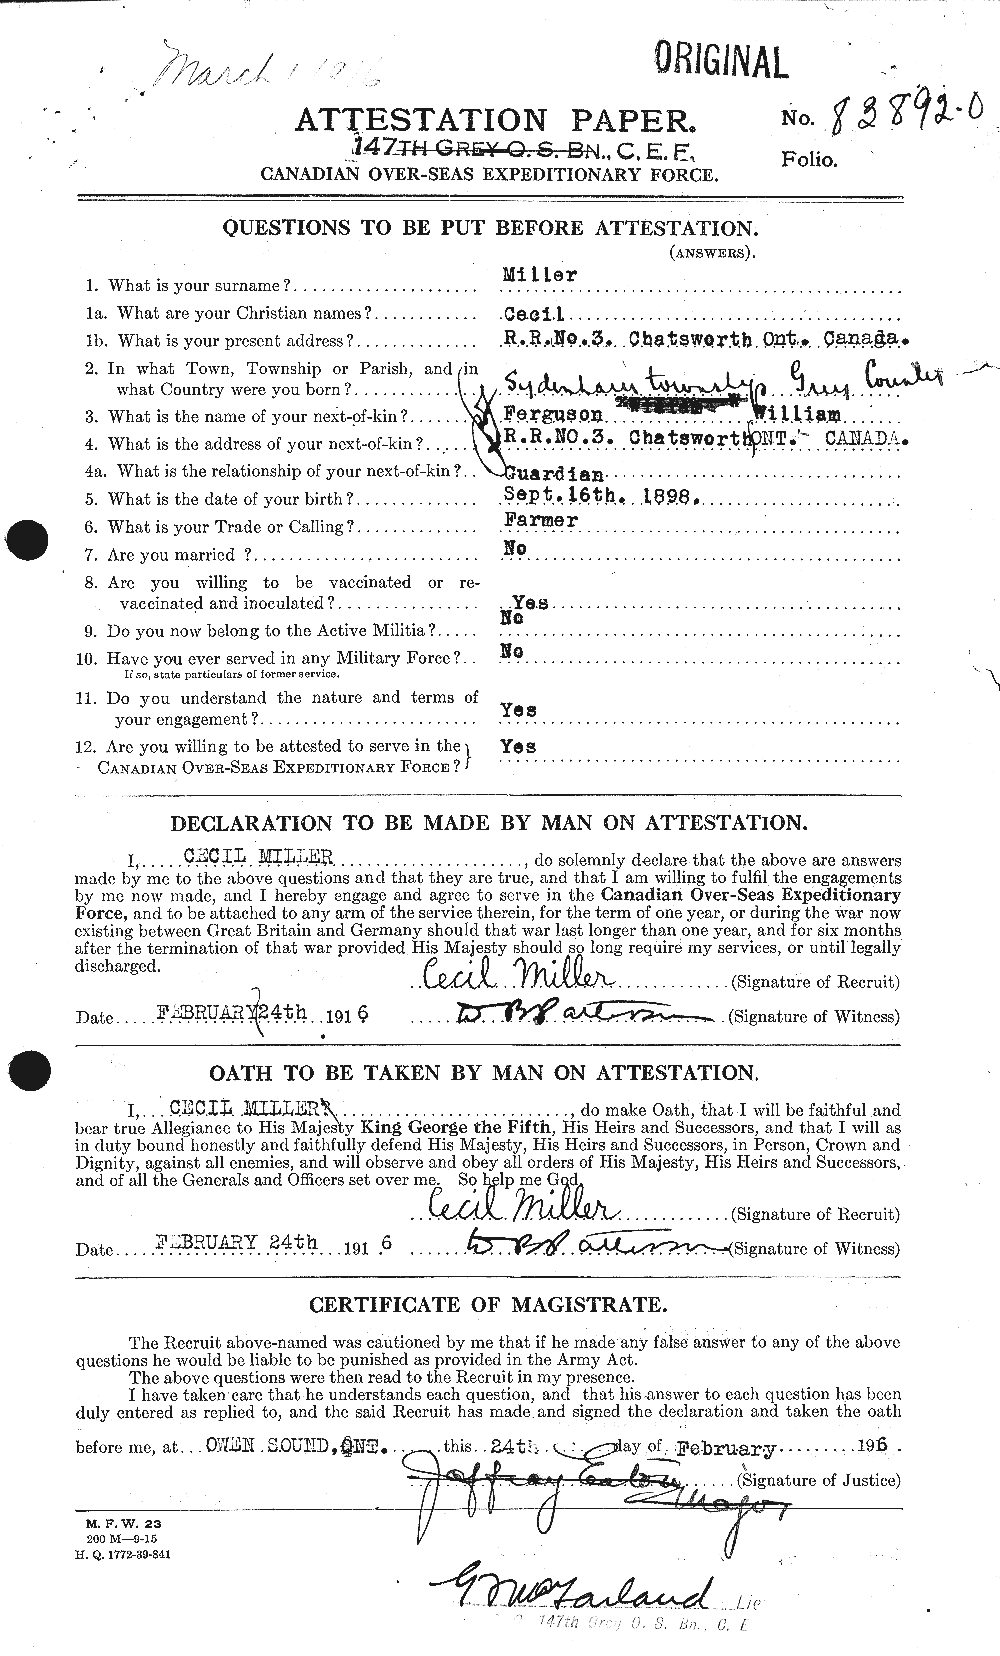 Dossiers du Personnel de la Première Guerre mondiale - CEC 498765a